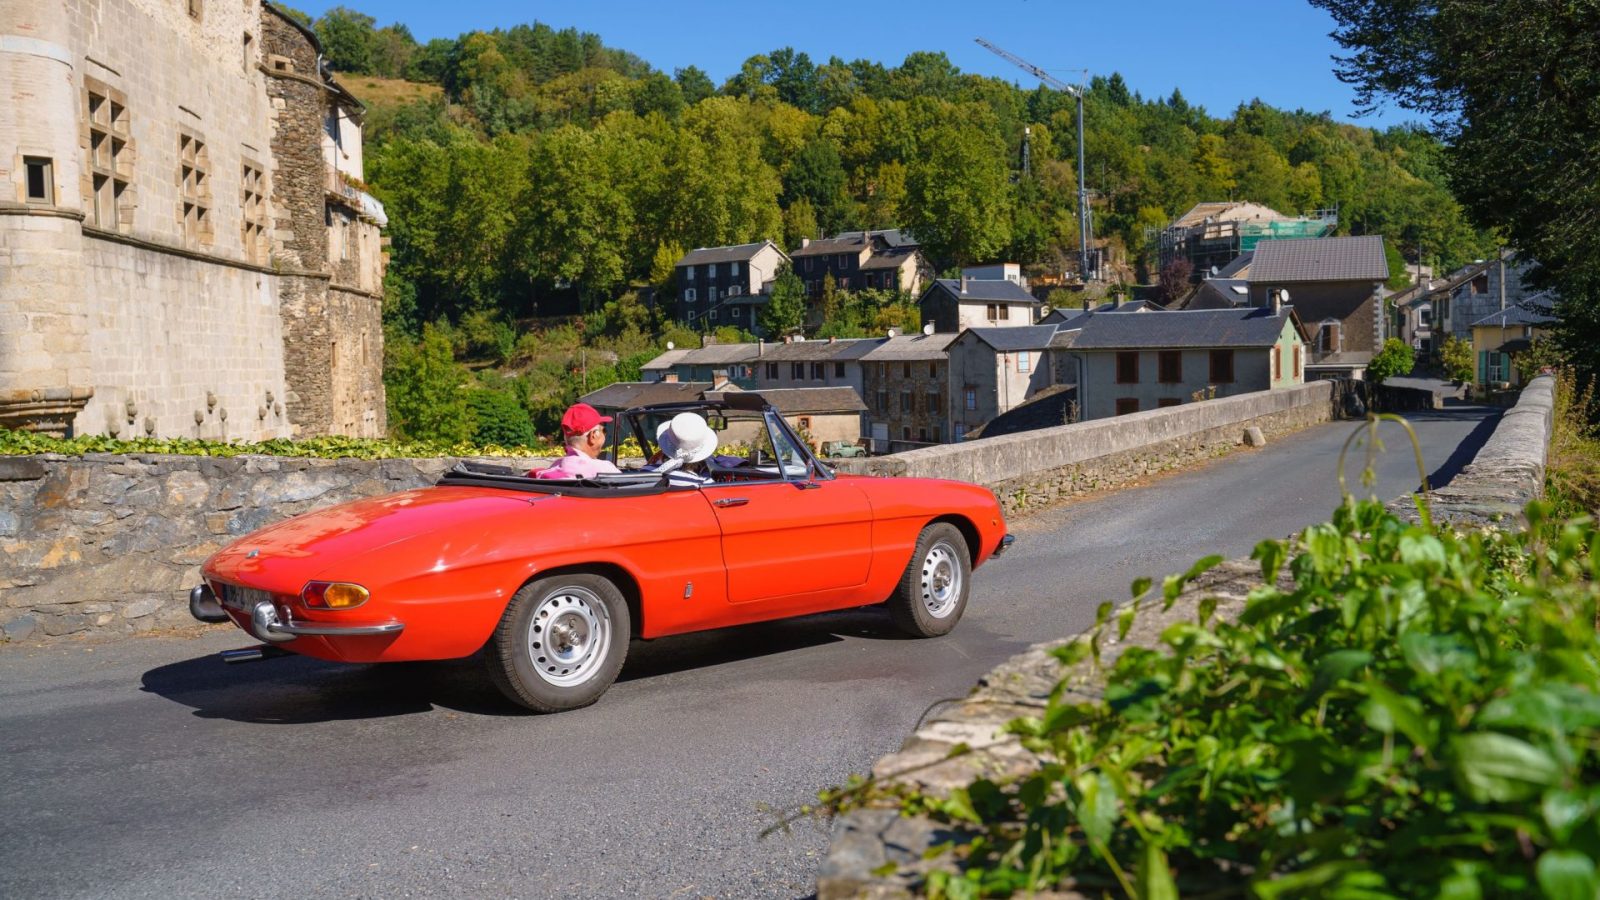 L'offre clubs de voitures anciennes - Tarn Tourisme